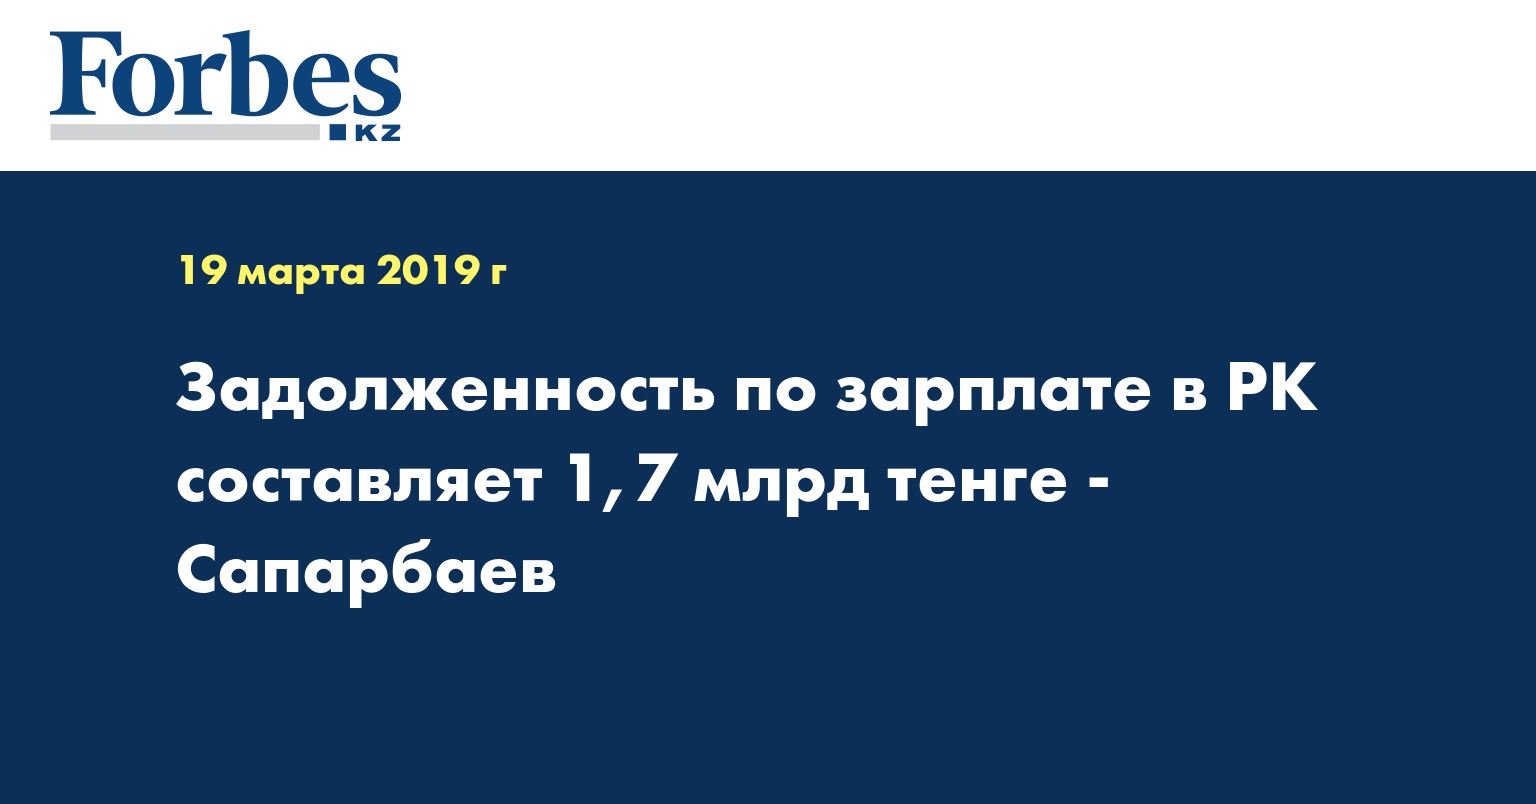 Задолженность по зарплате в РК составляет 1,7 млрд тенге - Сапарбаев